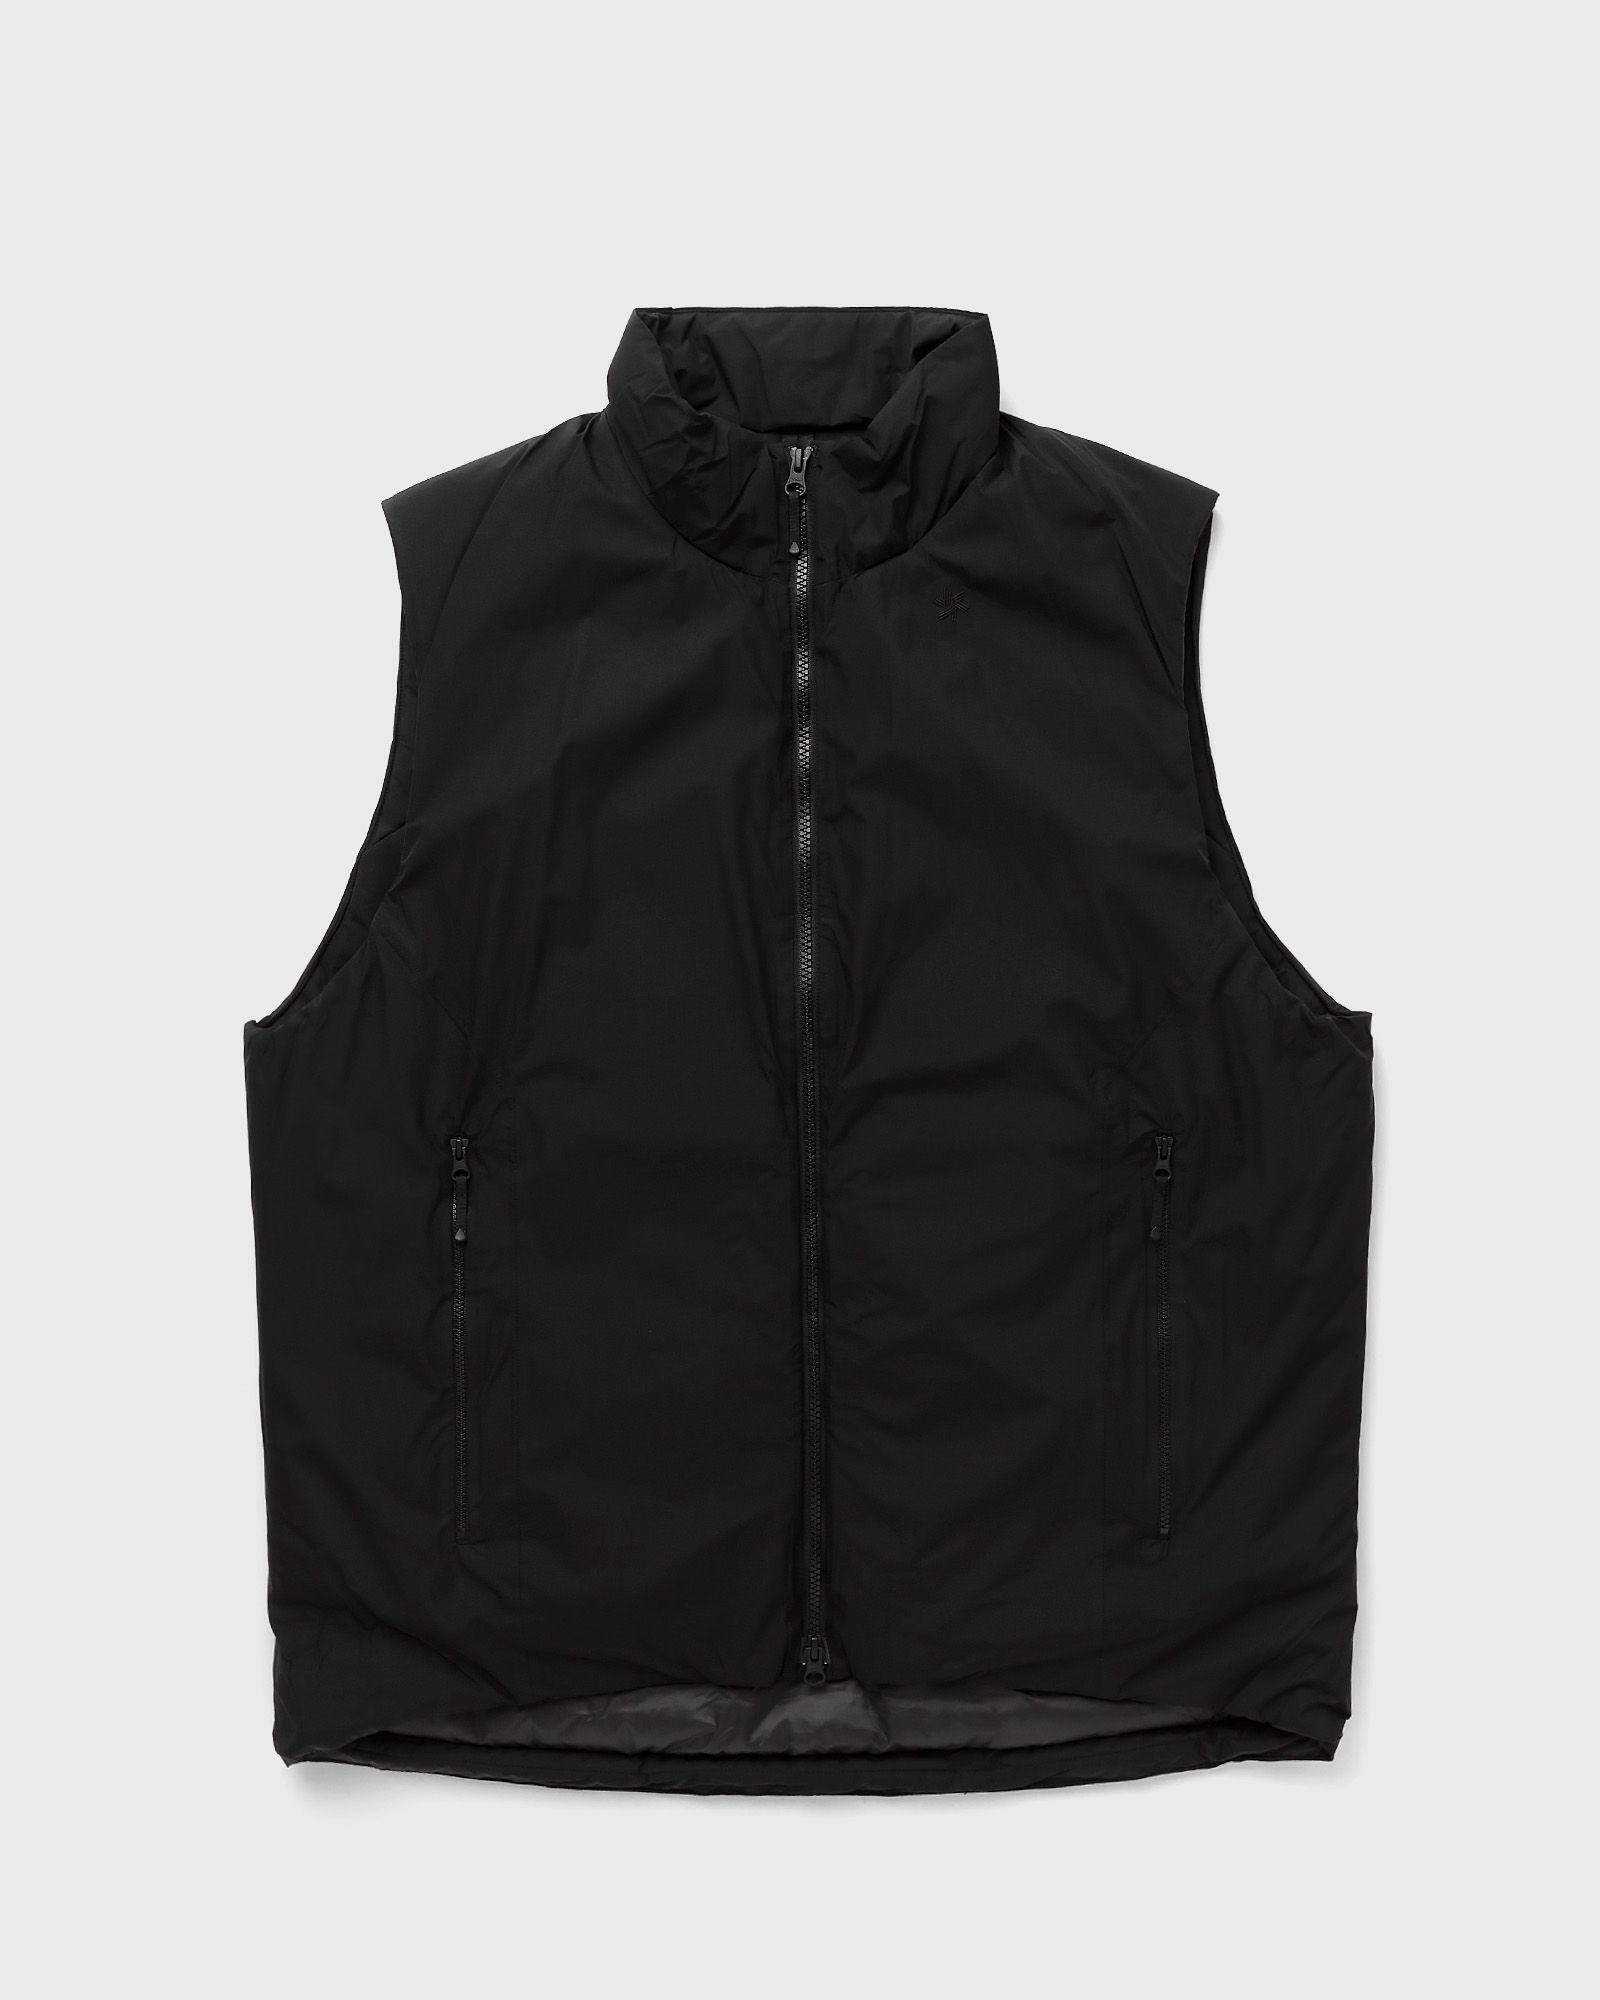 Goldwin - gore-tex windstopper puffy mil vest men vests black in größe:m